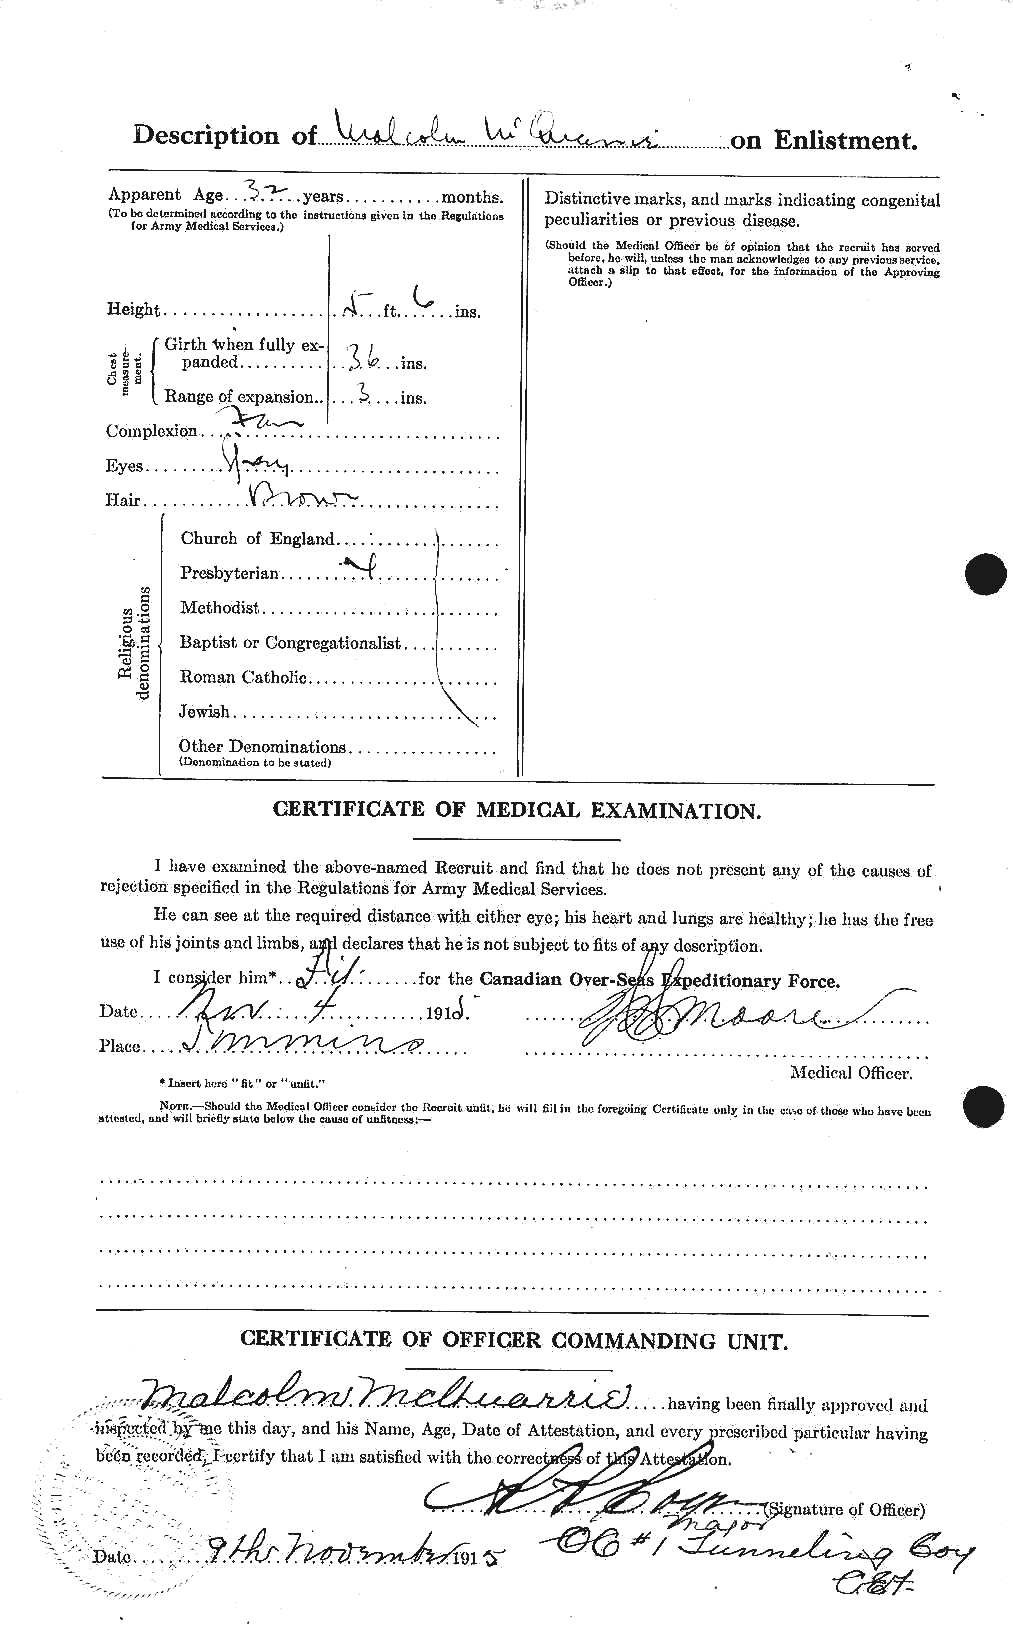 Dossiers du Personnel de la Première Guerre mondiale - CEC 545834b